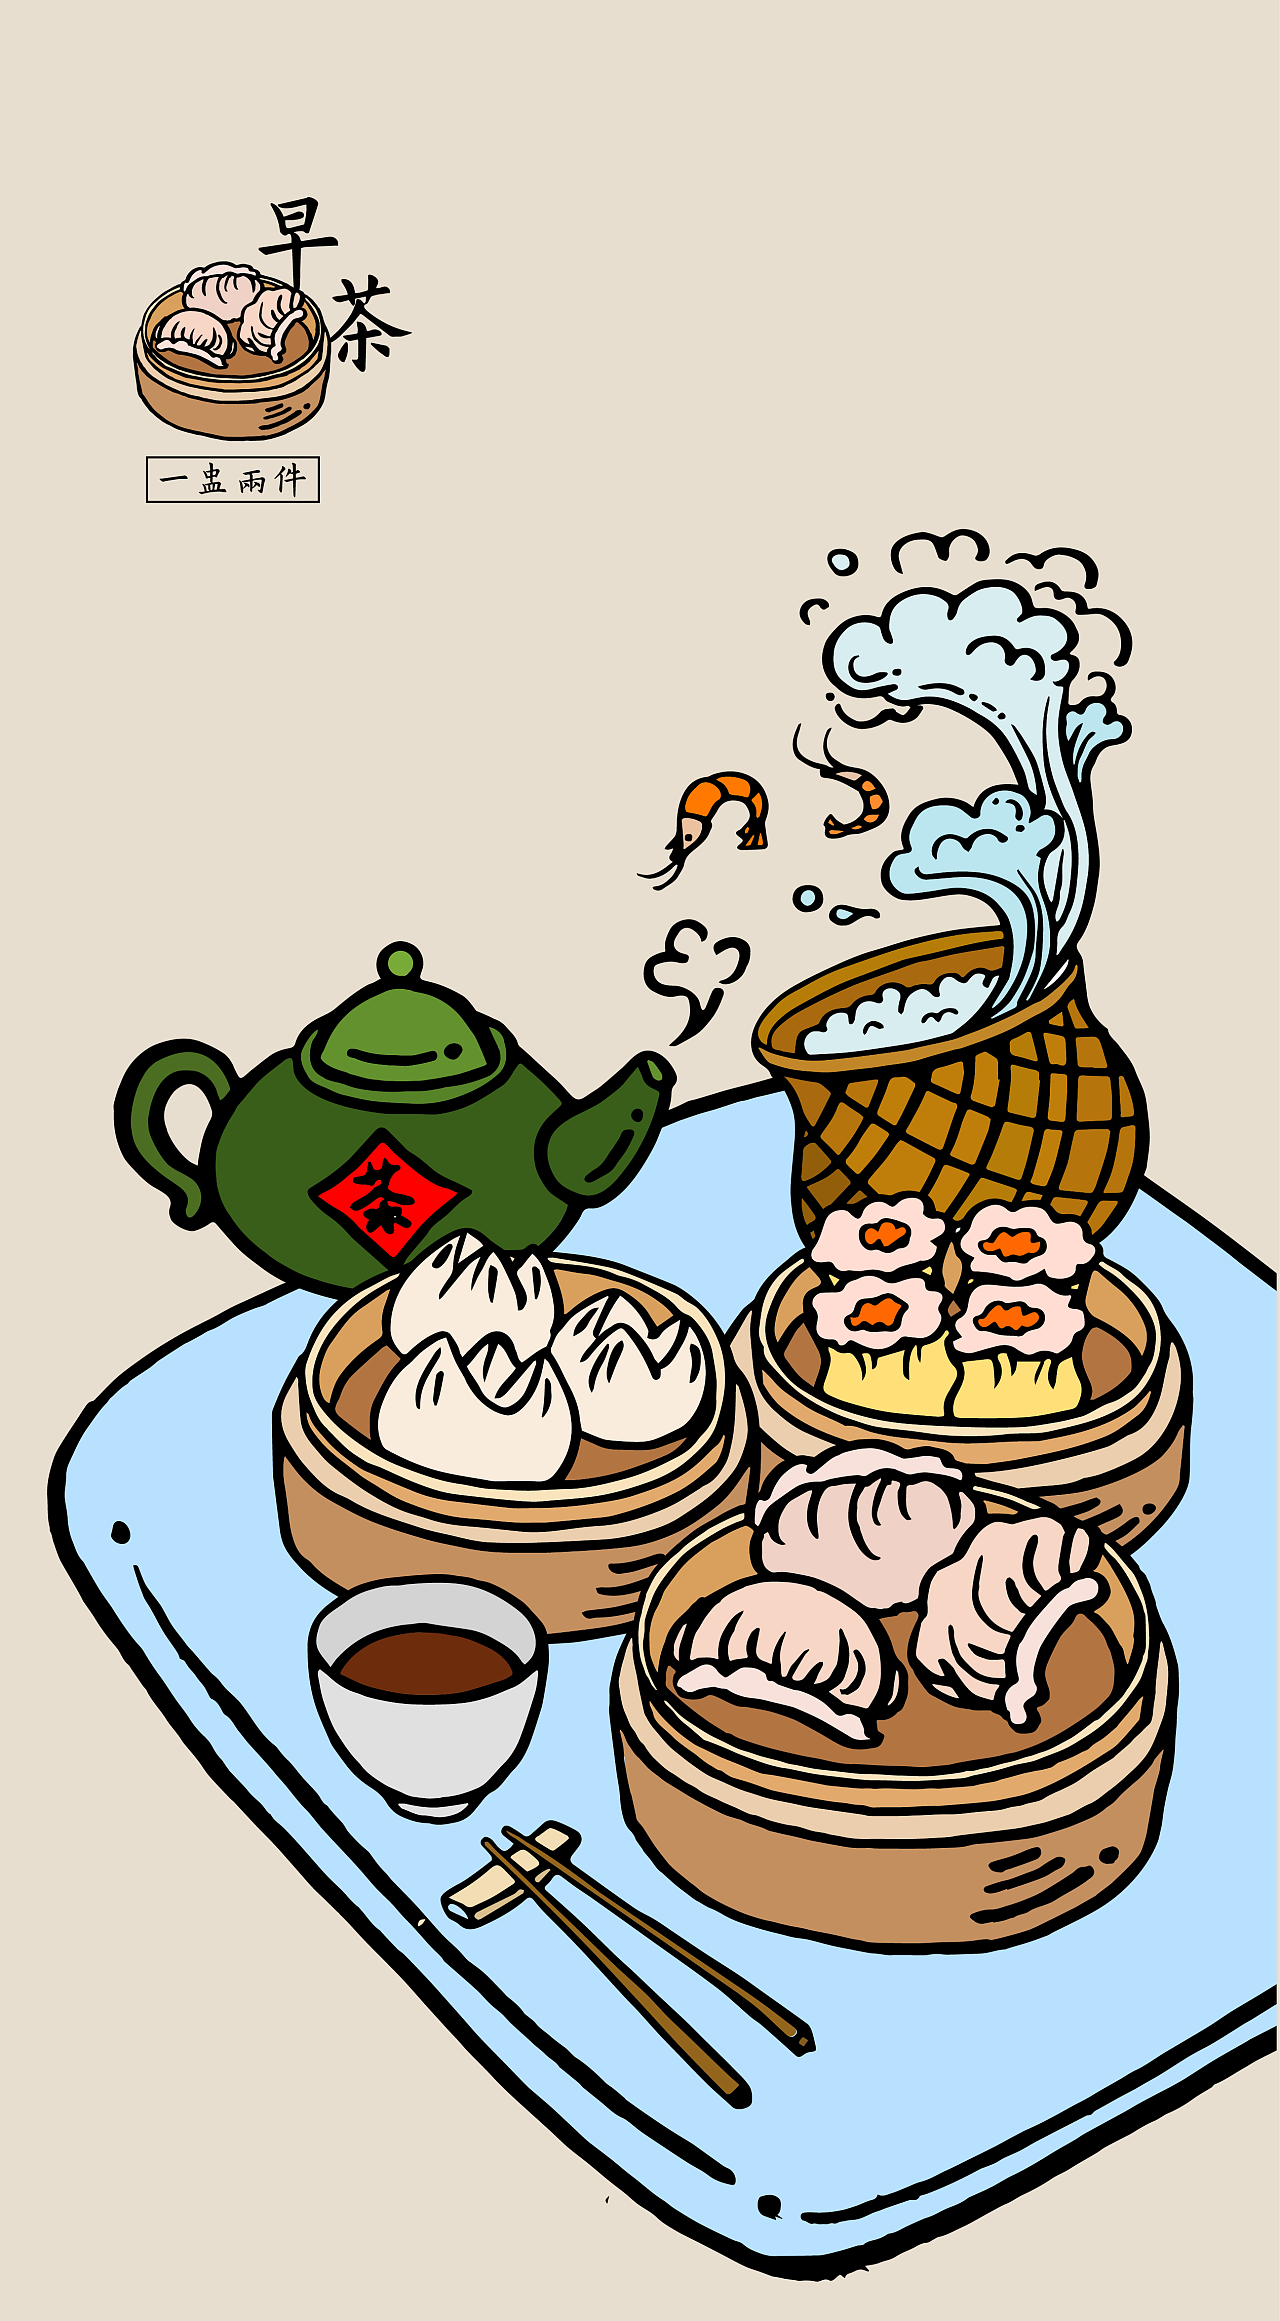 广式点心,虾饺,叉烧包,烧卖,加上一壶茶.老广州传统早茶文化.